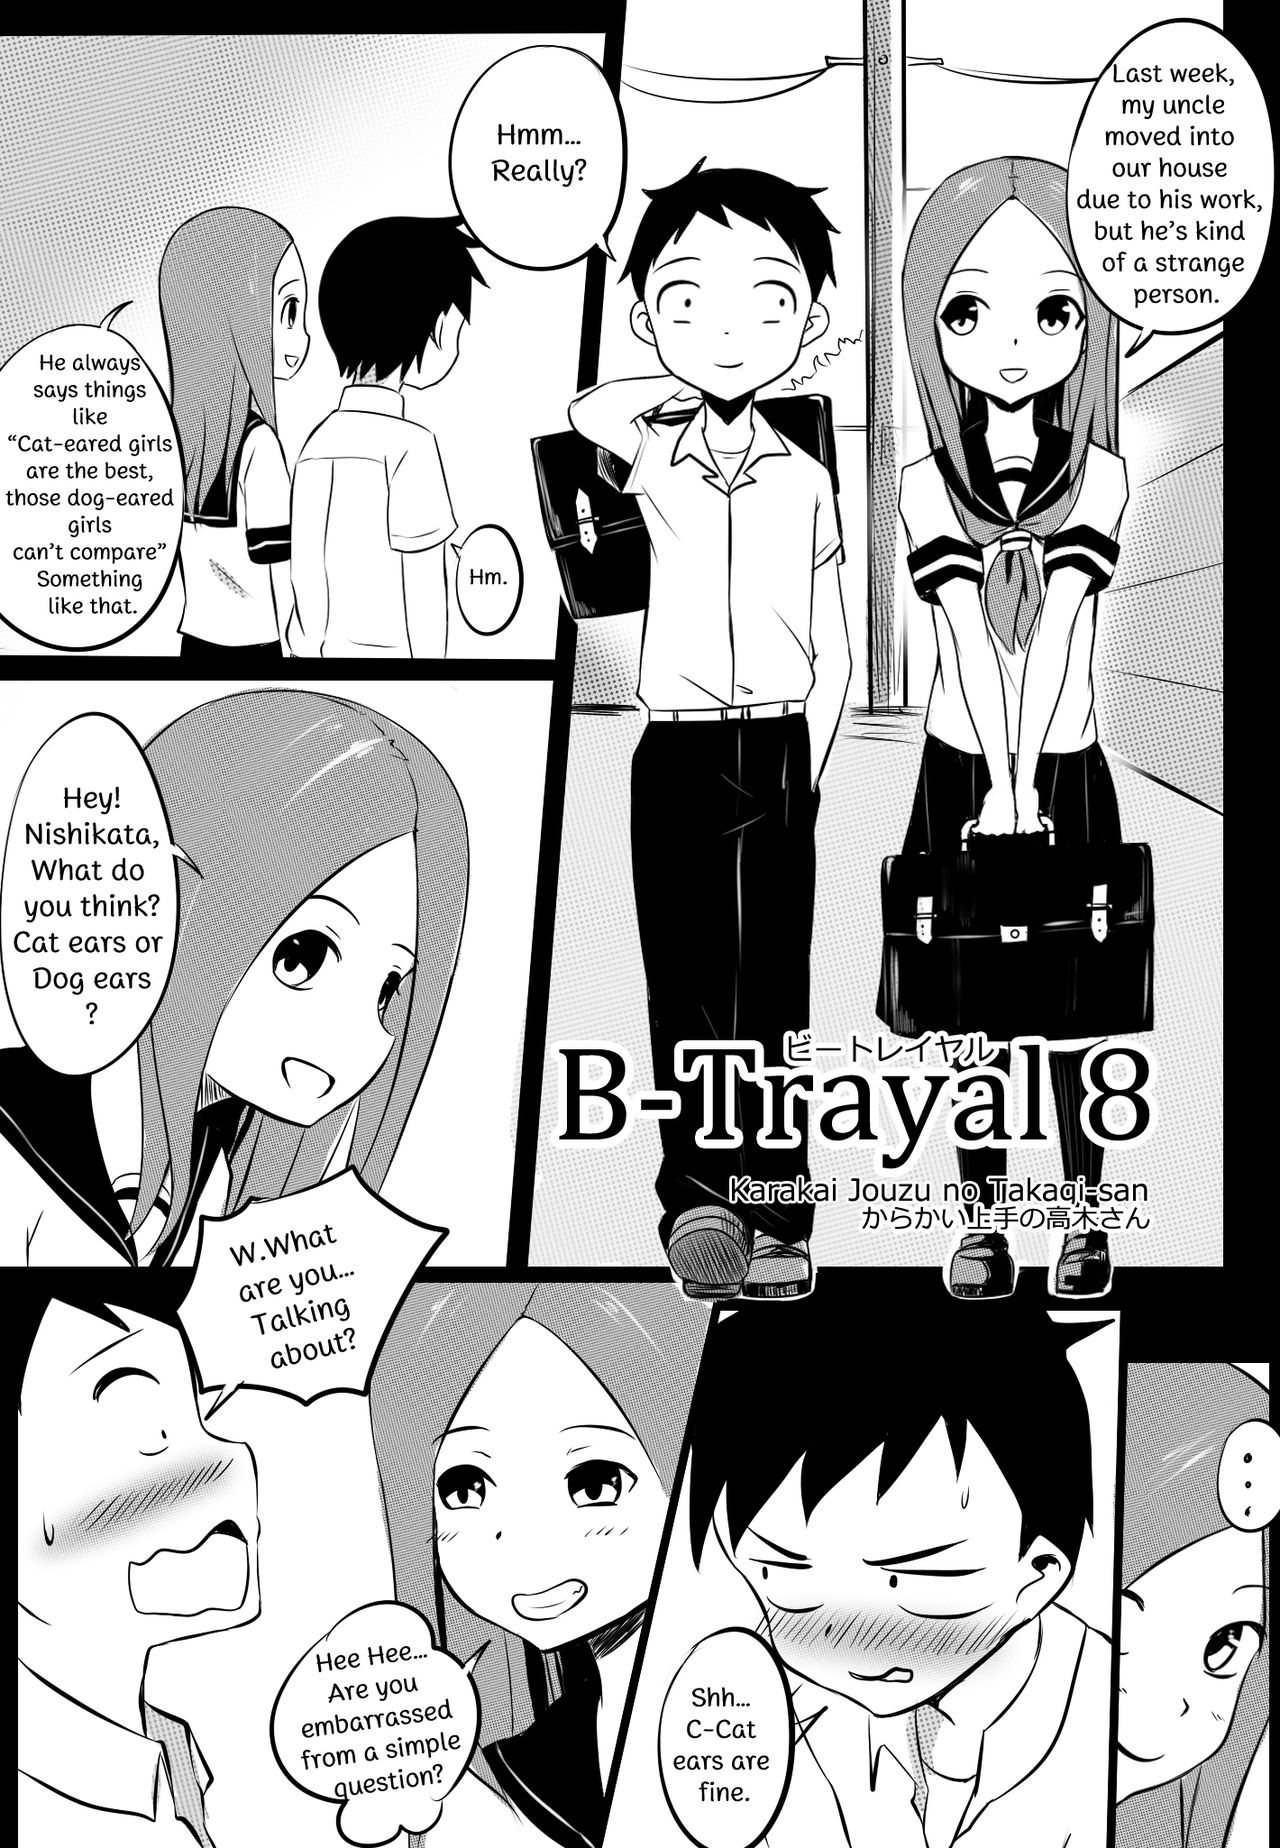 [Merkonig] B-Trayal 8 (Karakai Jouzu no Takagi-san) [English] page 2 full